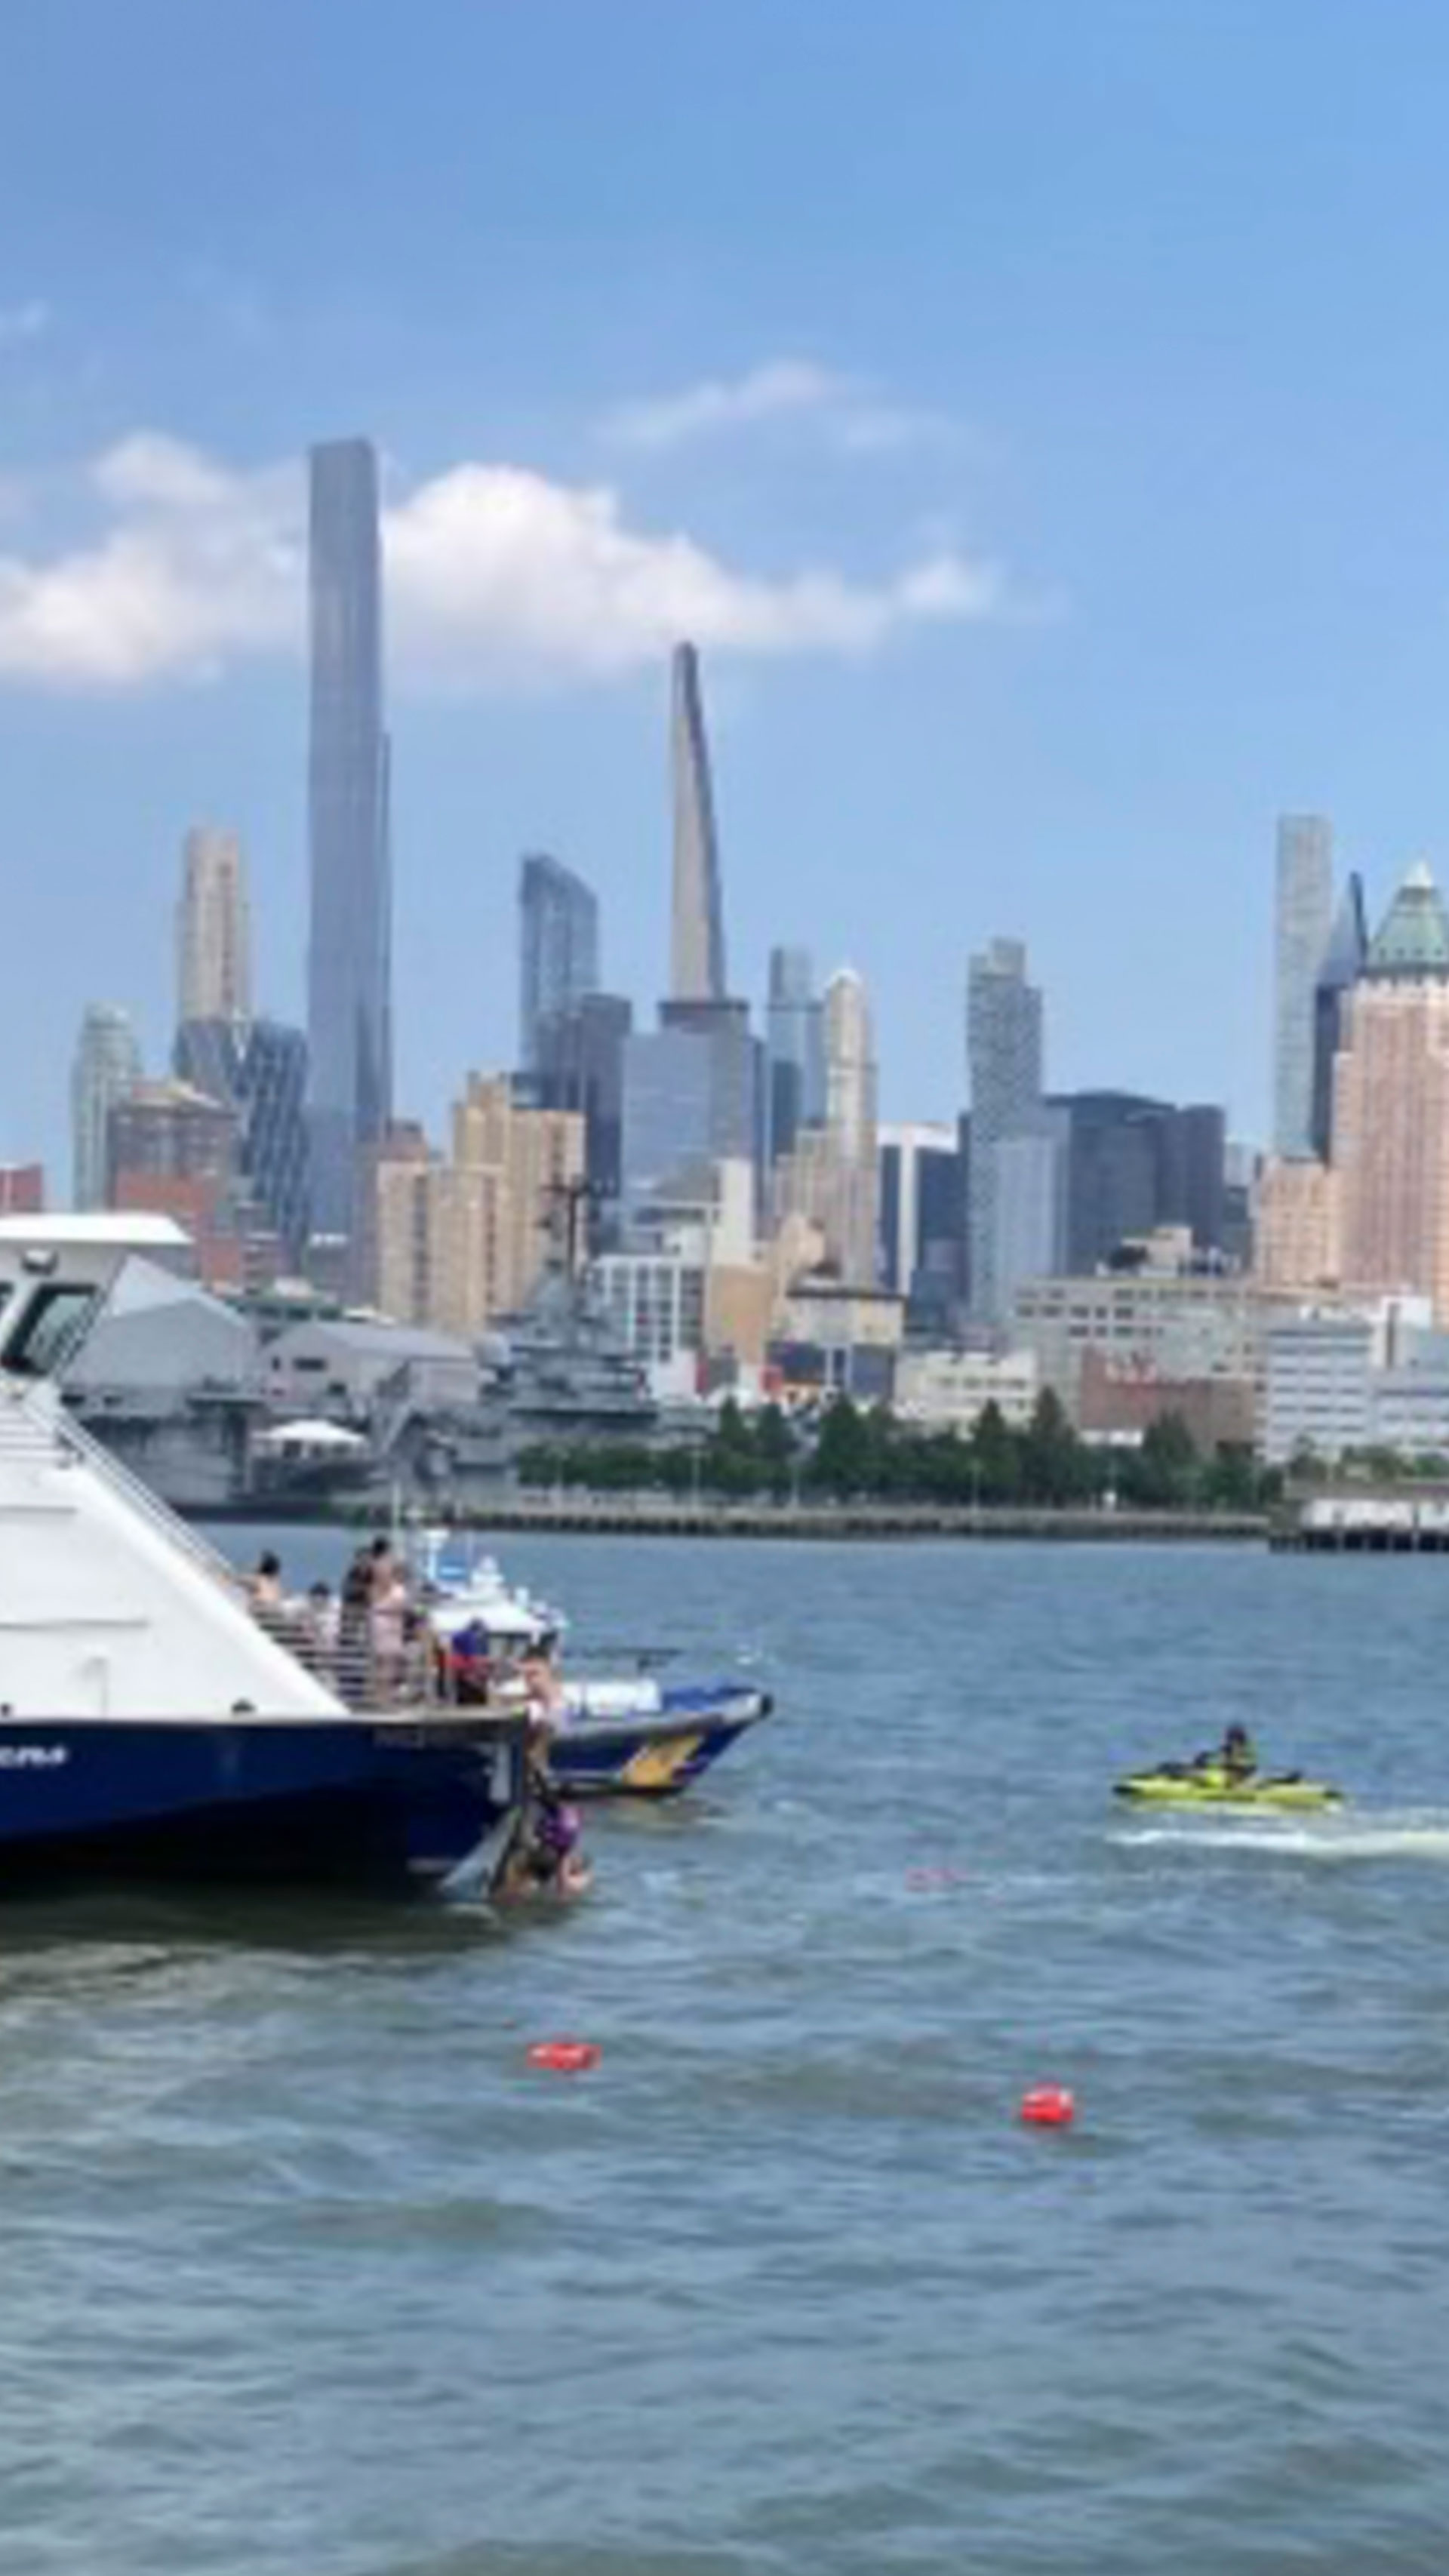 Esta foto proporcionada por NY Waterway muestra al personal del ferry realizando el rescate de personas después de que un barco volcara en el río Hudson este martes 12 de julio de 2022, en Nueva York (NY Waterway vía AP)